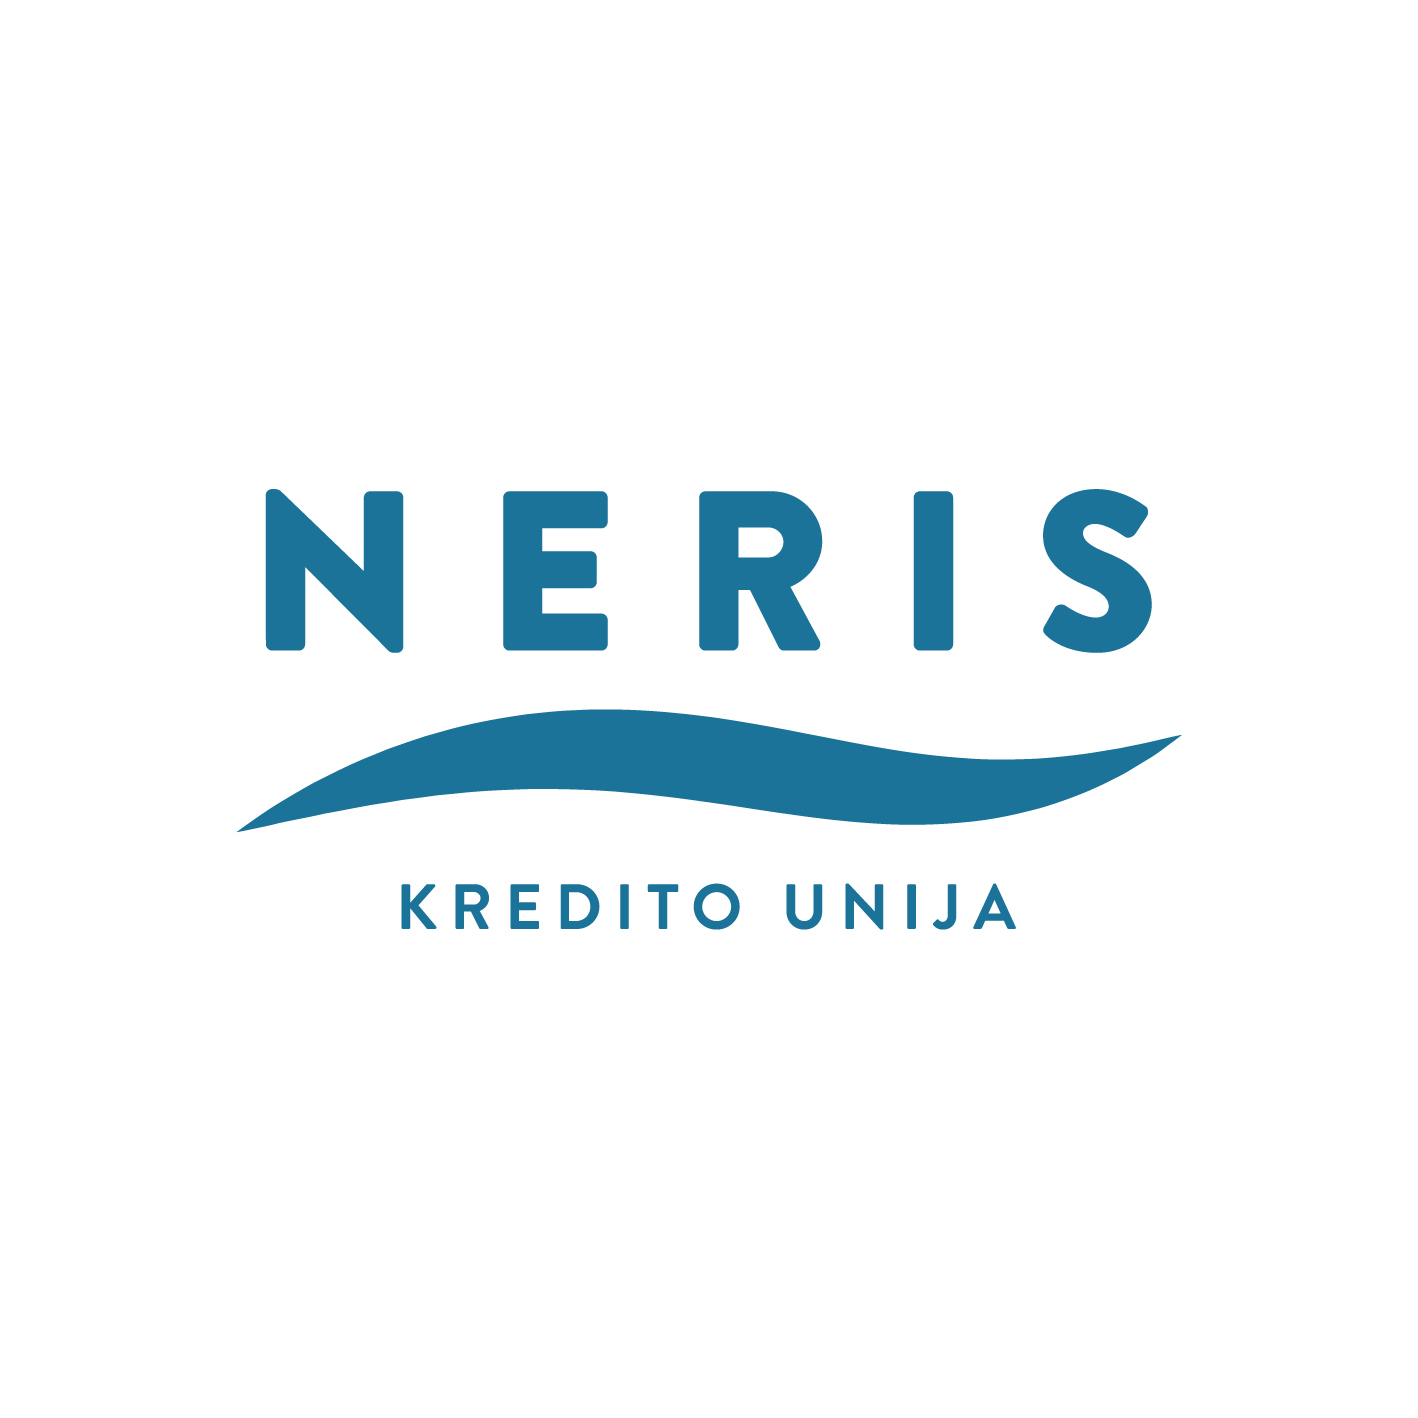 Kredito unija Neris